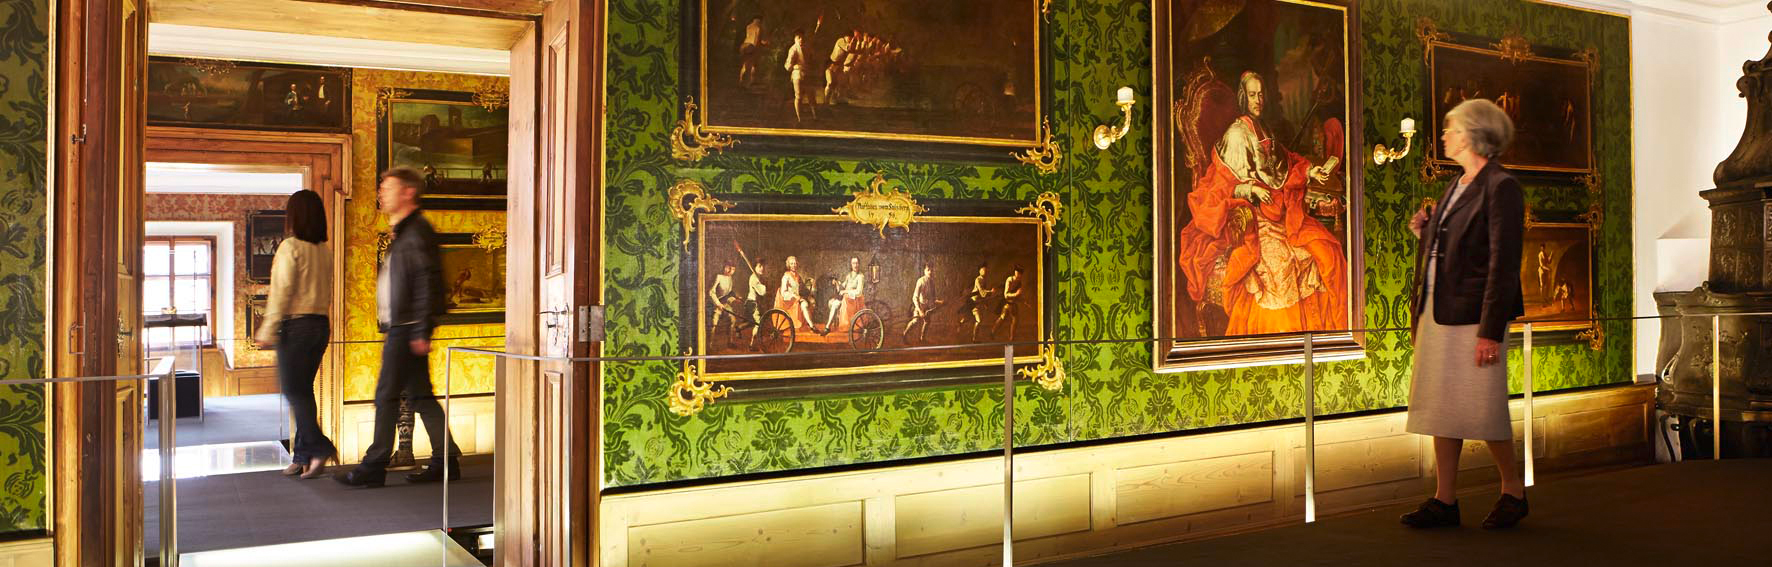 In den Fürstenzimmern im Keltenmuseum Hallein zeigen Gemälde aus dem 18. Jahrhundert Leben und Arbeiten in der Halleiner Salzstadt. © Keltenmuseum Hallein, Foto: Reinhard